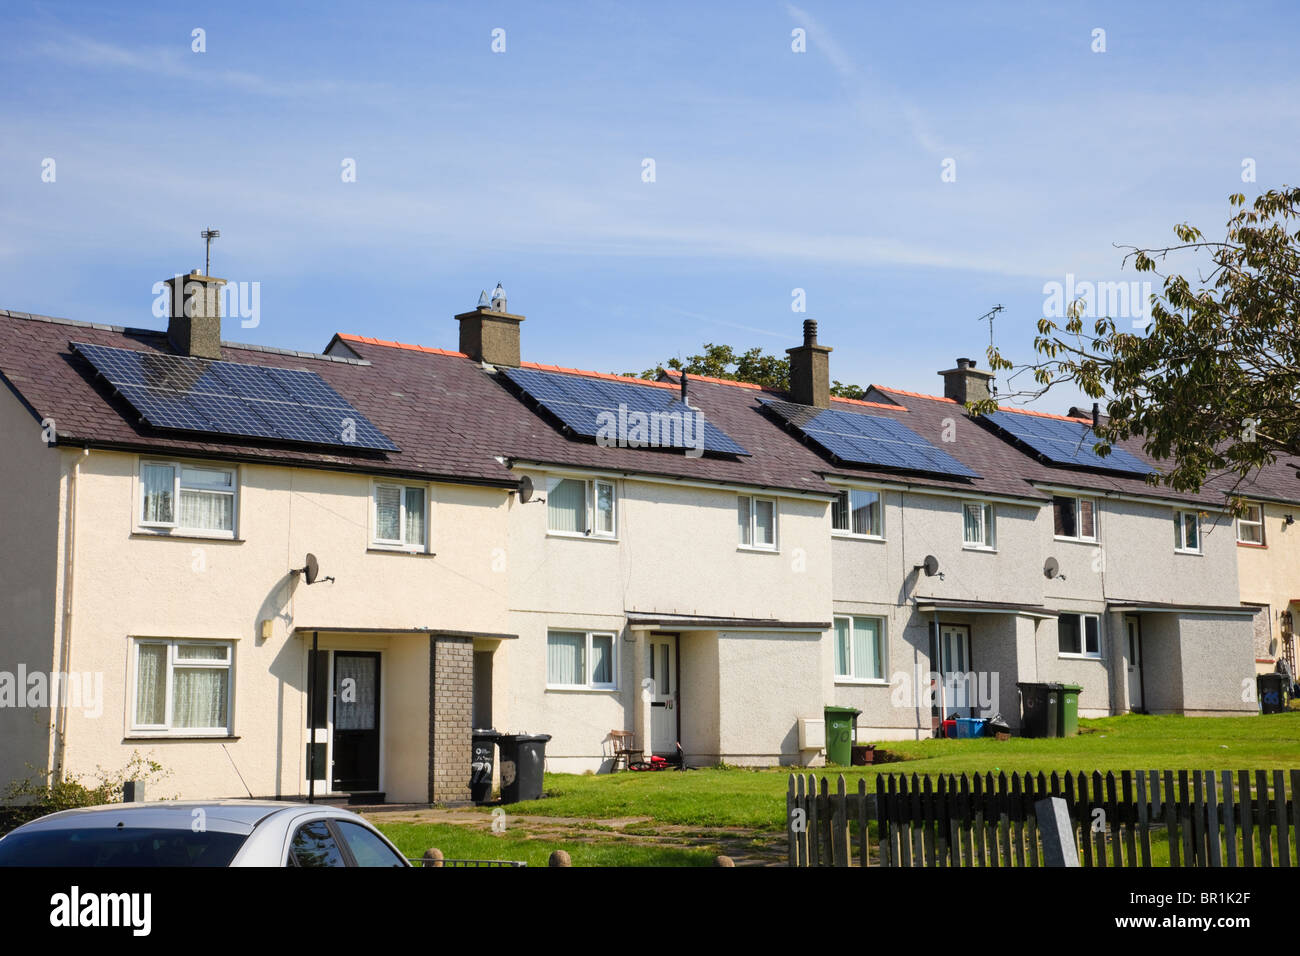 Zeile der städtischen Reihenhäusern mit Solarzellen auf dem Dach in einem Wohngebiet Rat Immobilien Straße. Llangefni ISLE OF ANGLESEY Wales UK Stockfoto